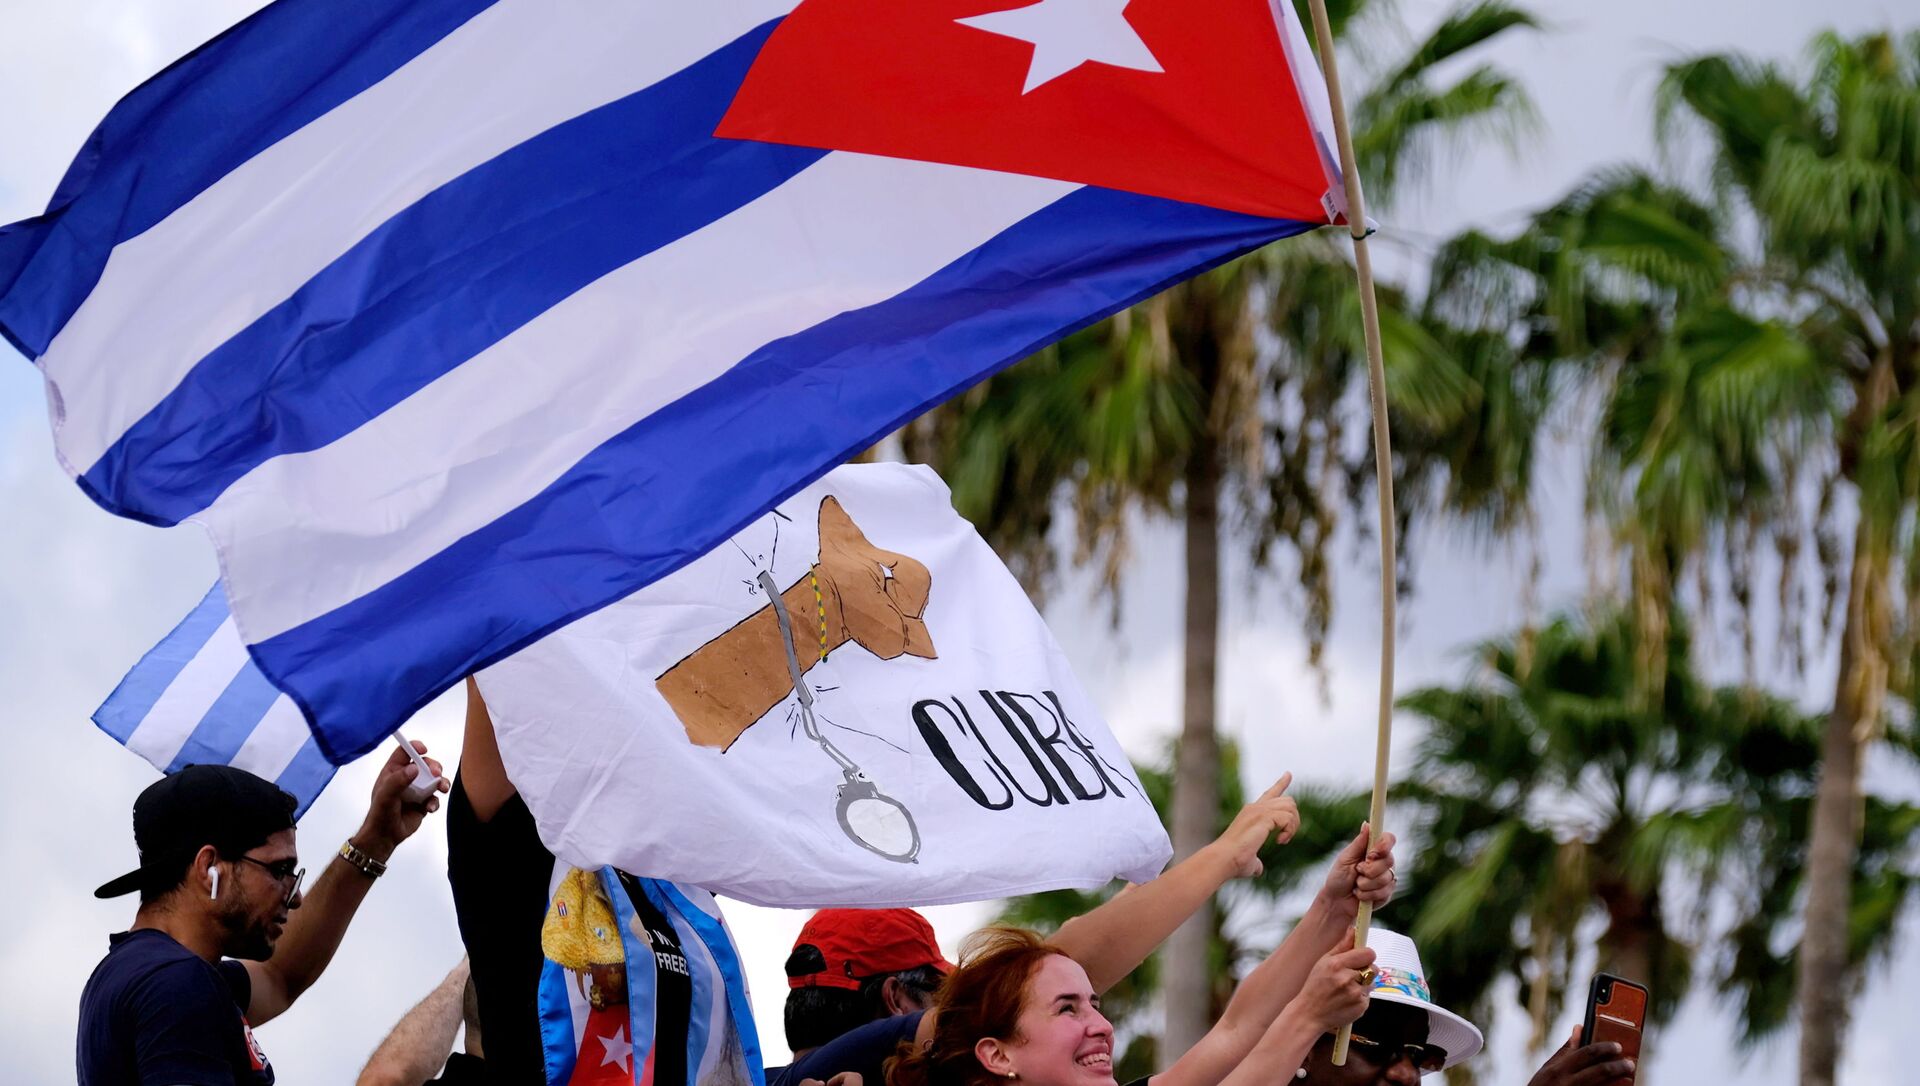 المهاجرون في ليتل هافانا يلوحون بالأعلام الكوبية أثناء ردهم على تقارير الاحتجاجات في كوبا ضد الاقتصاد المتدهور - سبوتنيك عربي, 1920, 12.07.2021